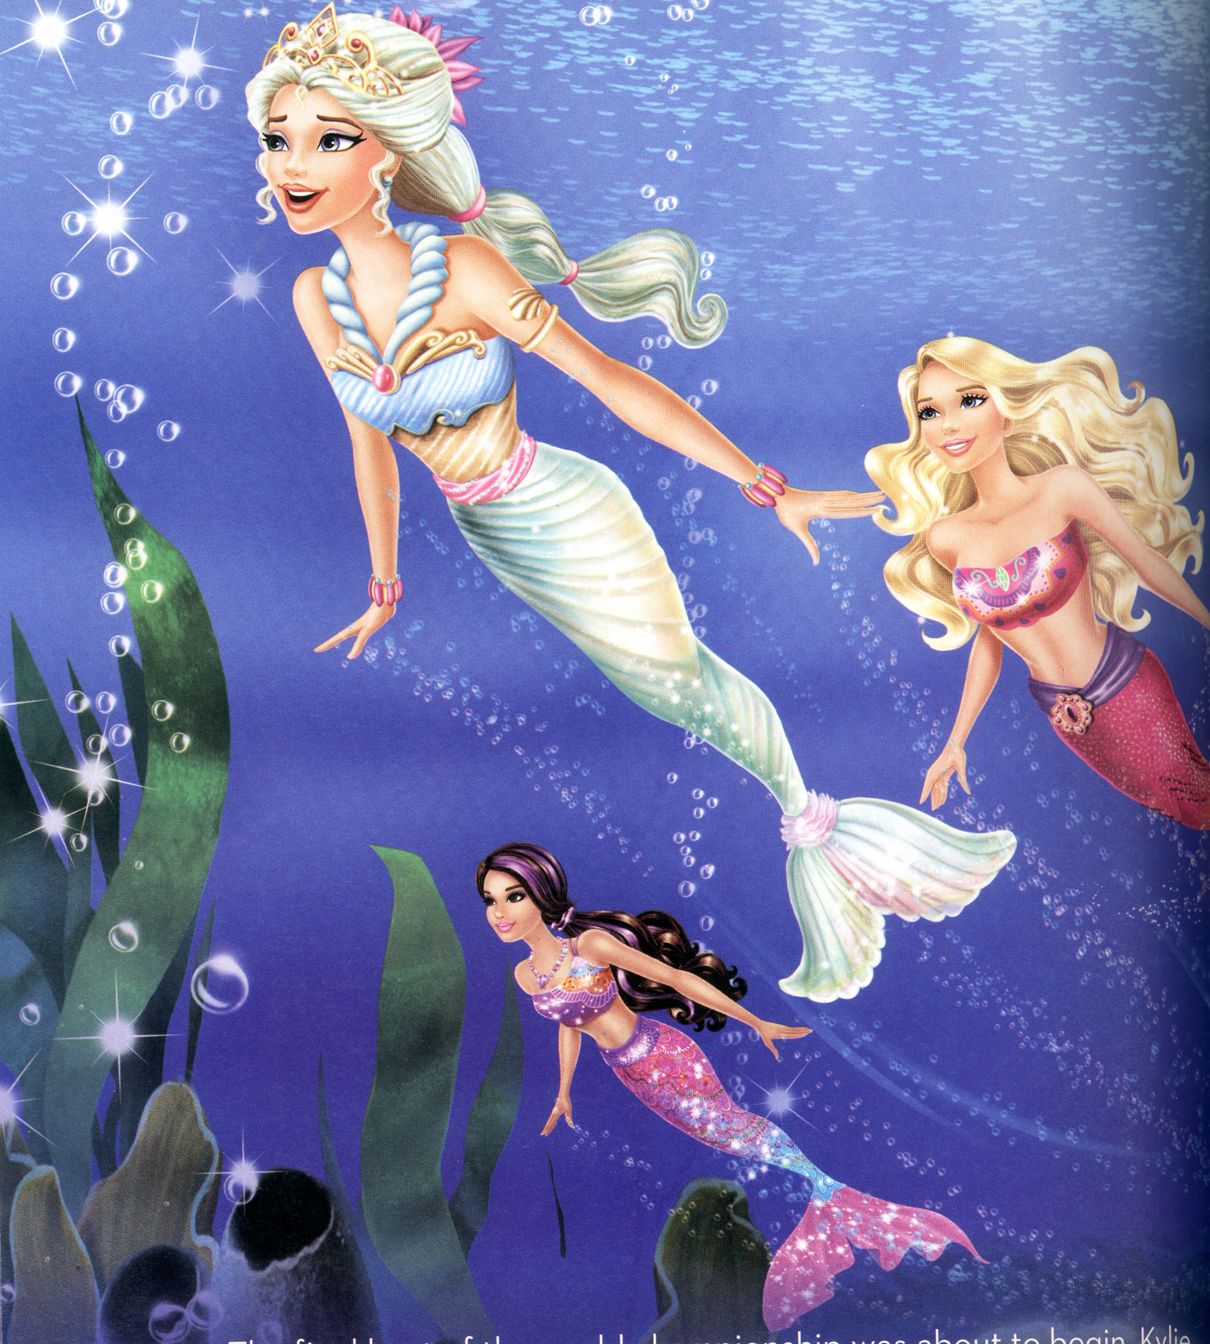 Barbie In A Mermaid Tale 2 Gallery. Mermaid Cartoon, Barbie Cartoon, Mermaid Barbie